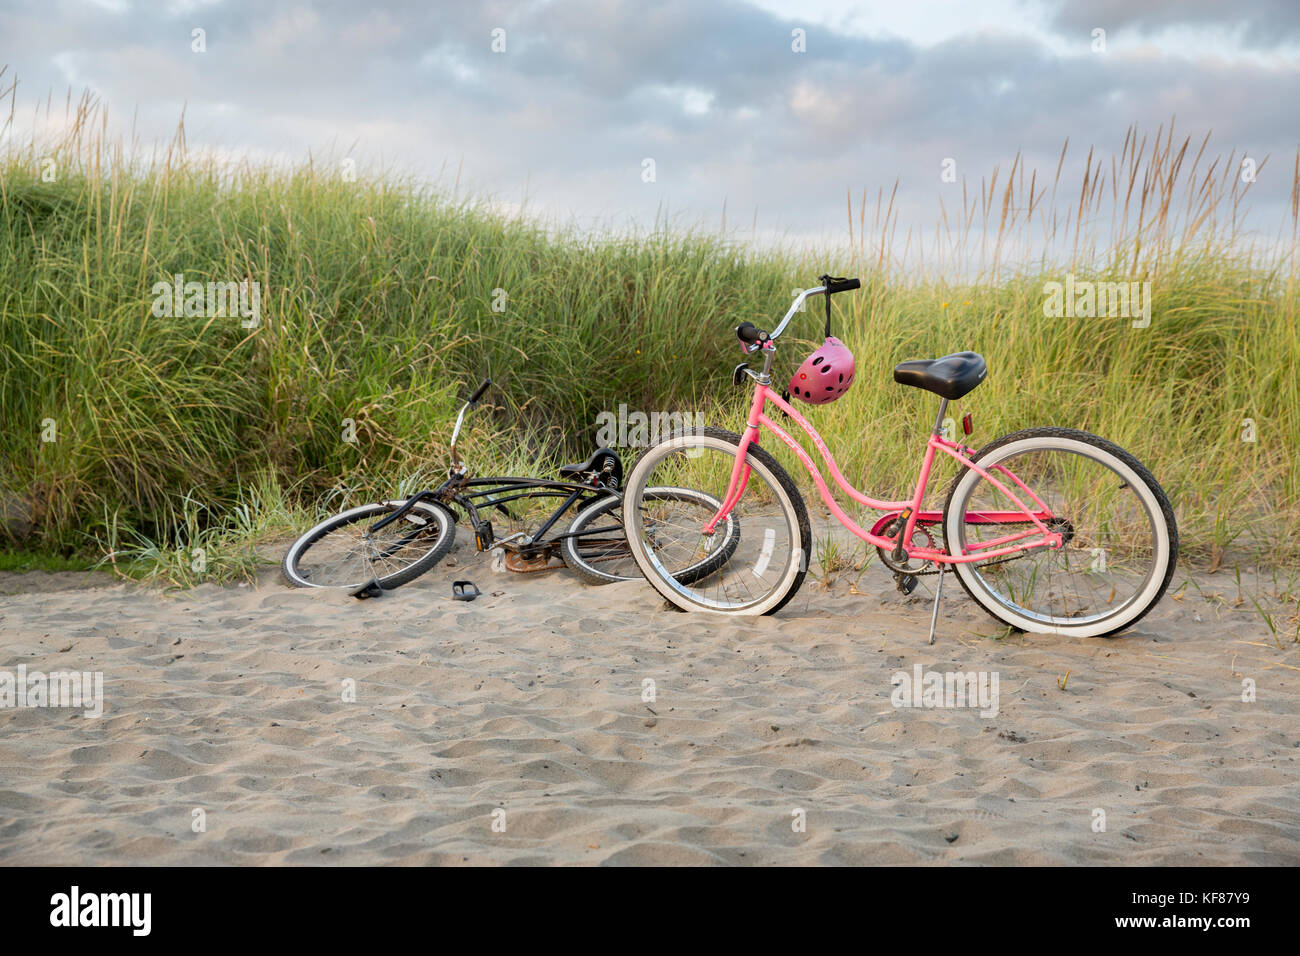 Stati Uniti d'America, nello stato di Washington, spiaggia lunga penisola, international kite festival, biciclette beach cruiser dalle dune Foto Stock